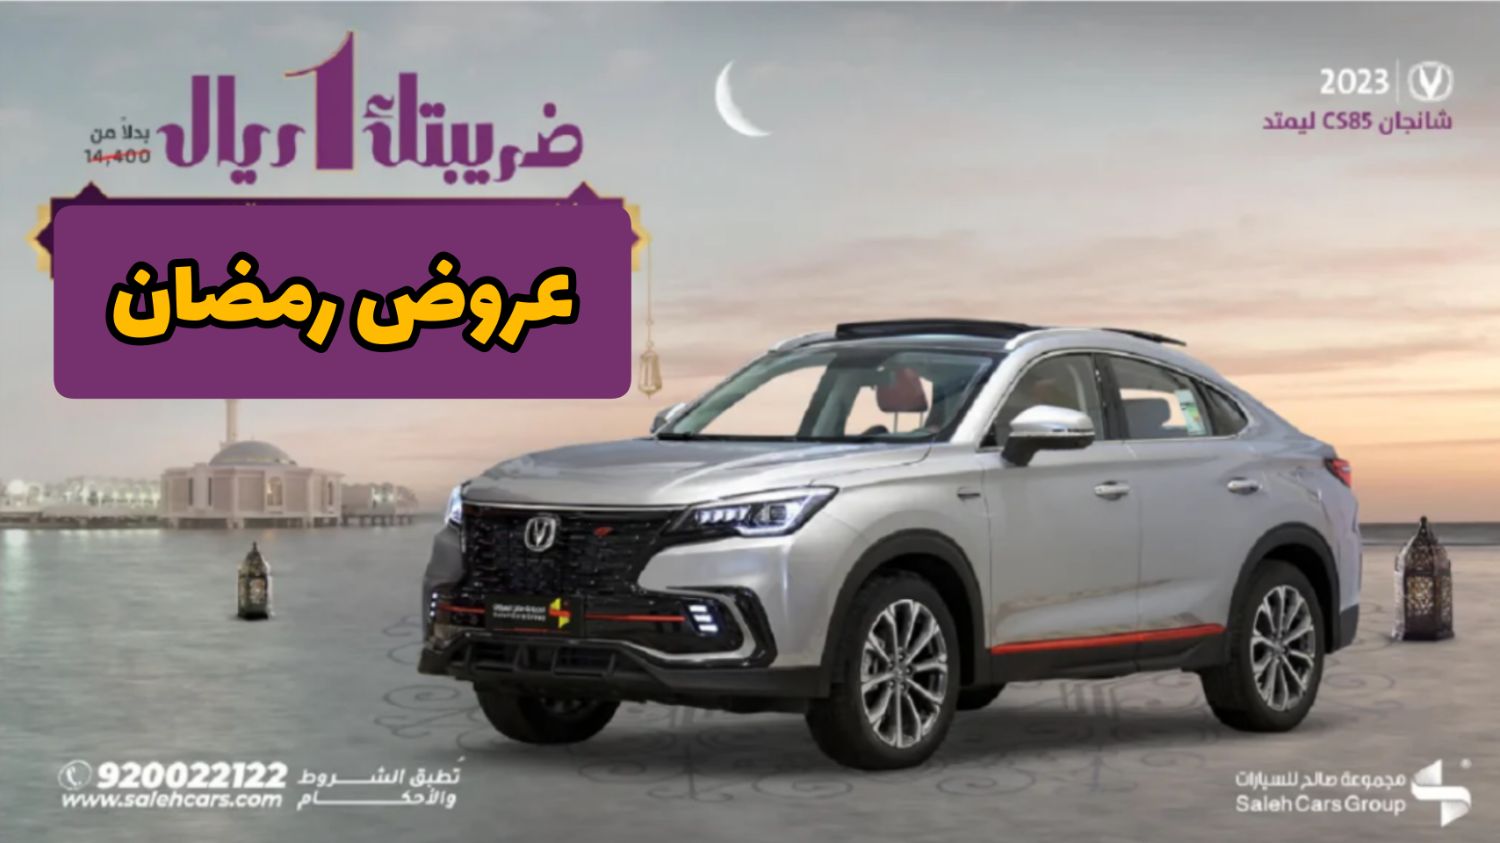 بخصم 50% .. إلحق عروض رمضان الأضخم في السعودية على سيارة شانجان CS85 ليمتد 2023 ولفترة محدودة 